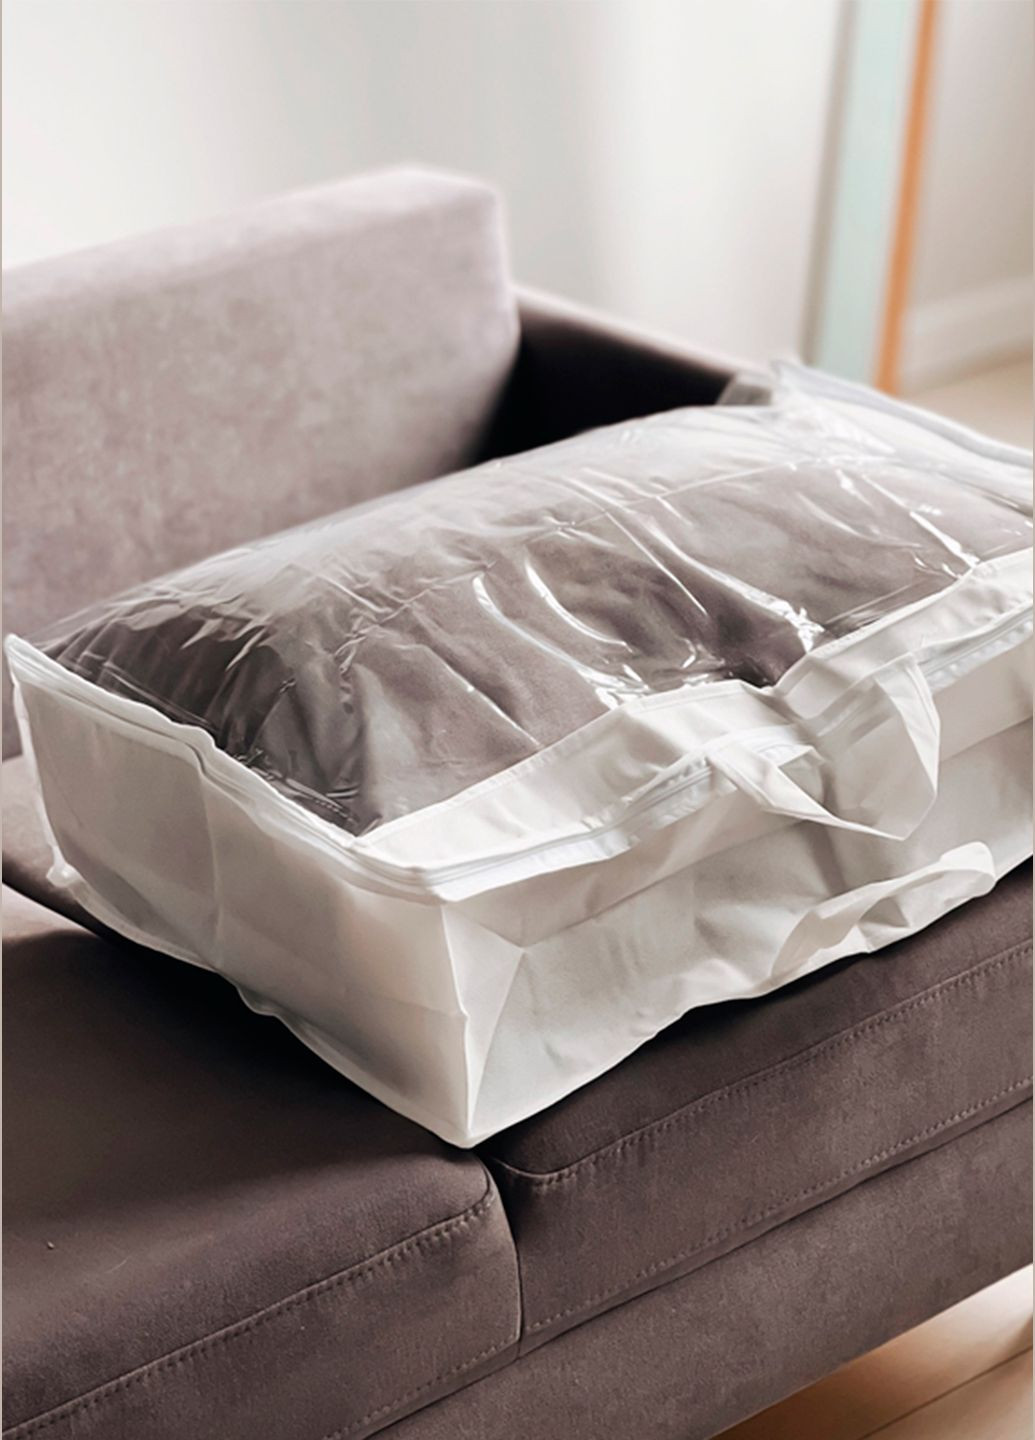 Чохол-сумка для зберігання речей, ковдр, подушок L 70х50х20 см з ручкою Organize (291018675)